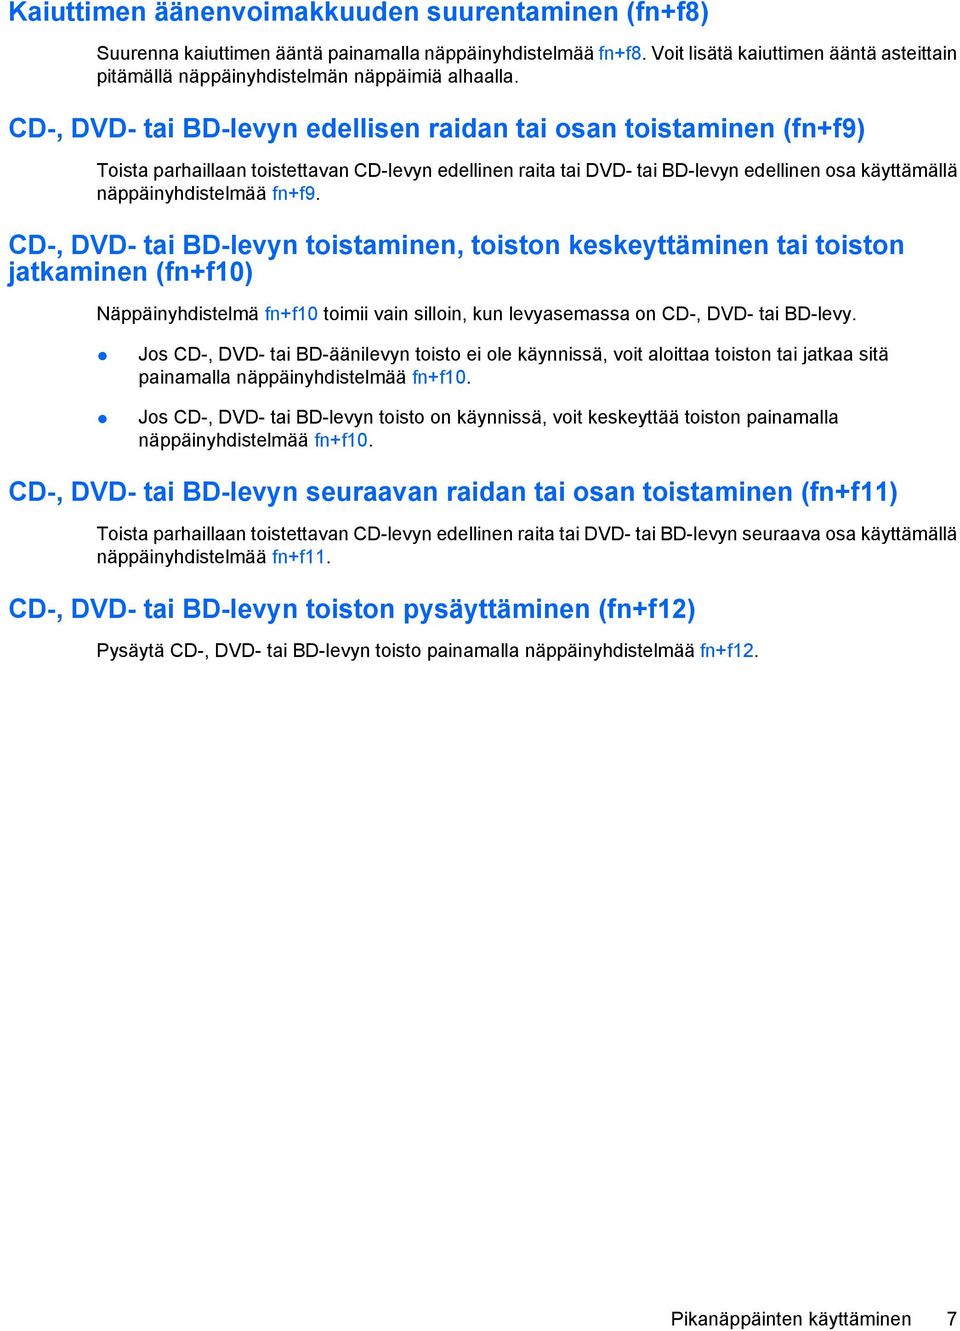 CD-, DVD- tai BD-levyn edellisen raidan tai osan toistaminen (fn+f9) Toista parhaillaan toistettavan CD-levyn edellinen raita tai DVD- tai BD-levyn edellinen osa käyttämällä näppäinyhdistelmää fn+f9.